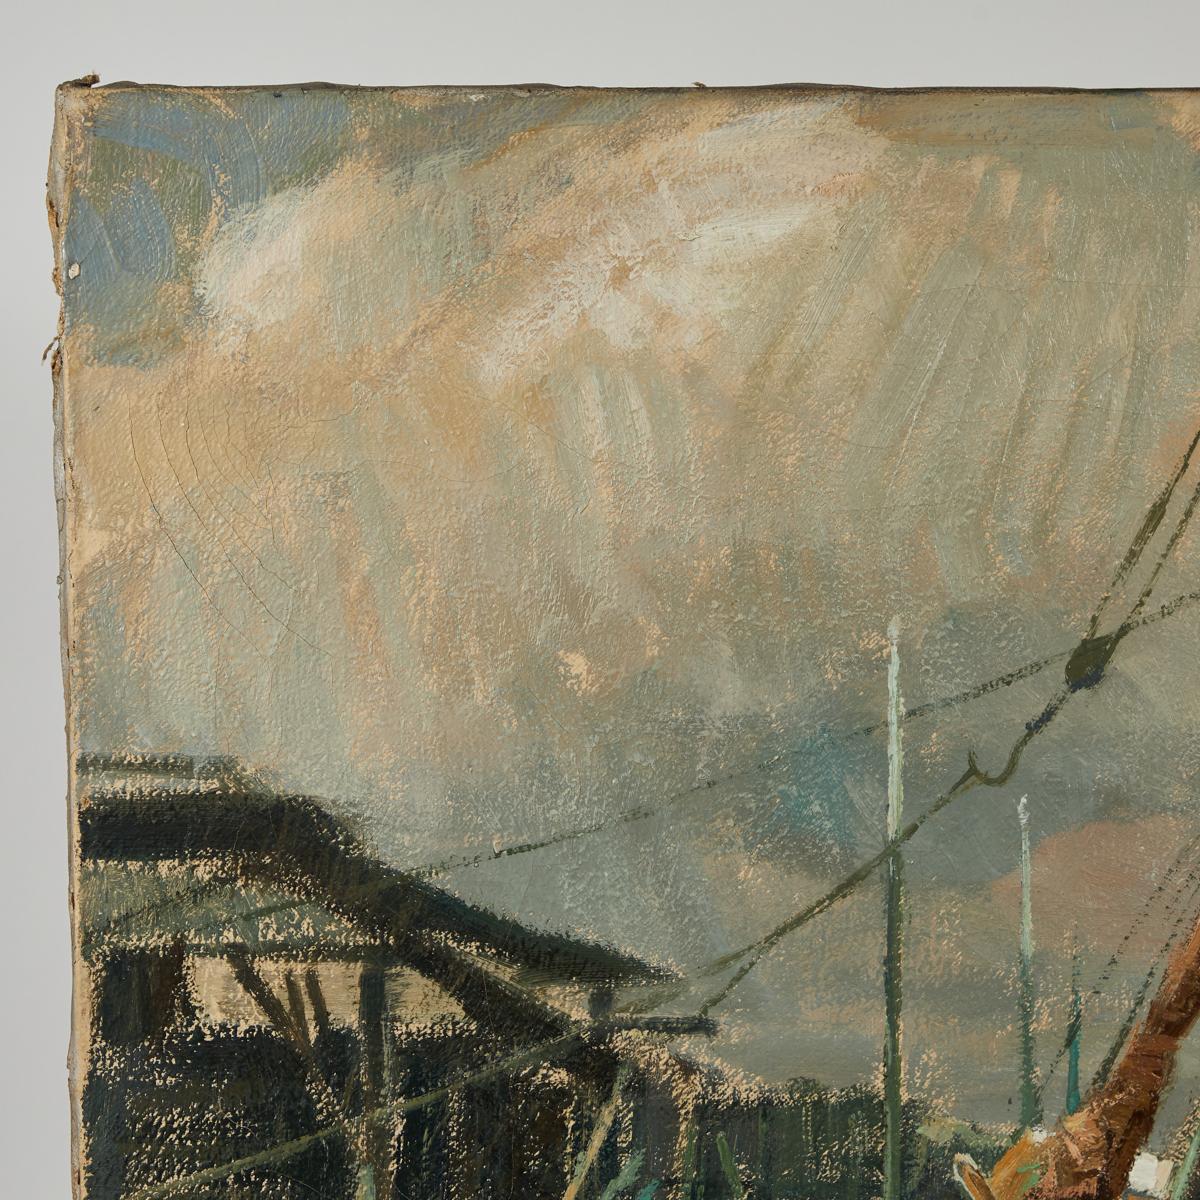 Toile Peinture sur toile belge du début du 20e siècle représentant des bateaux en vente